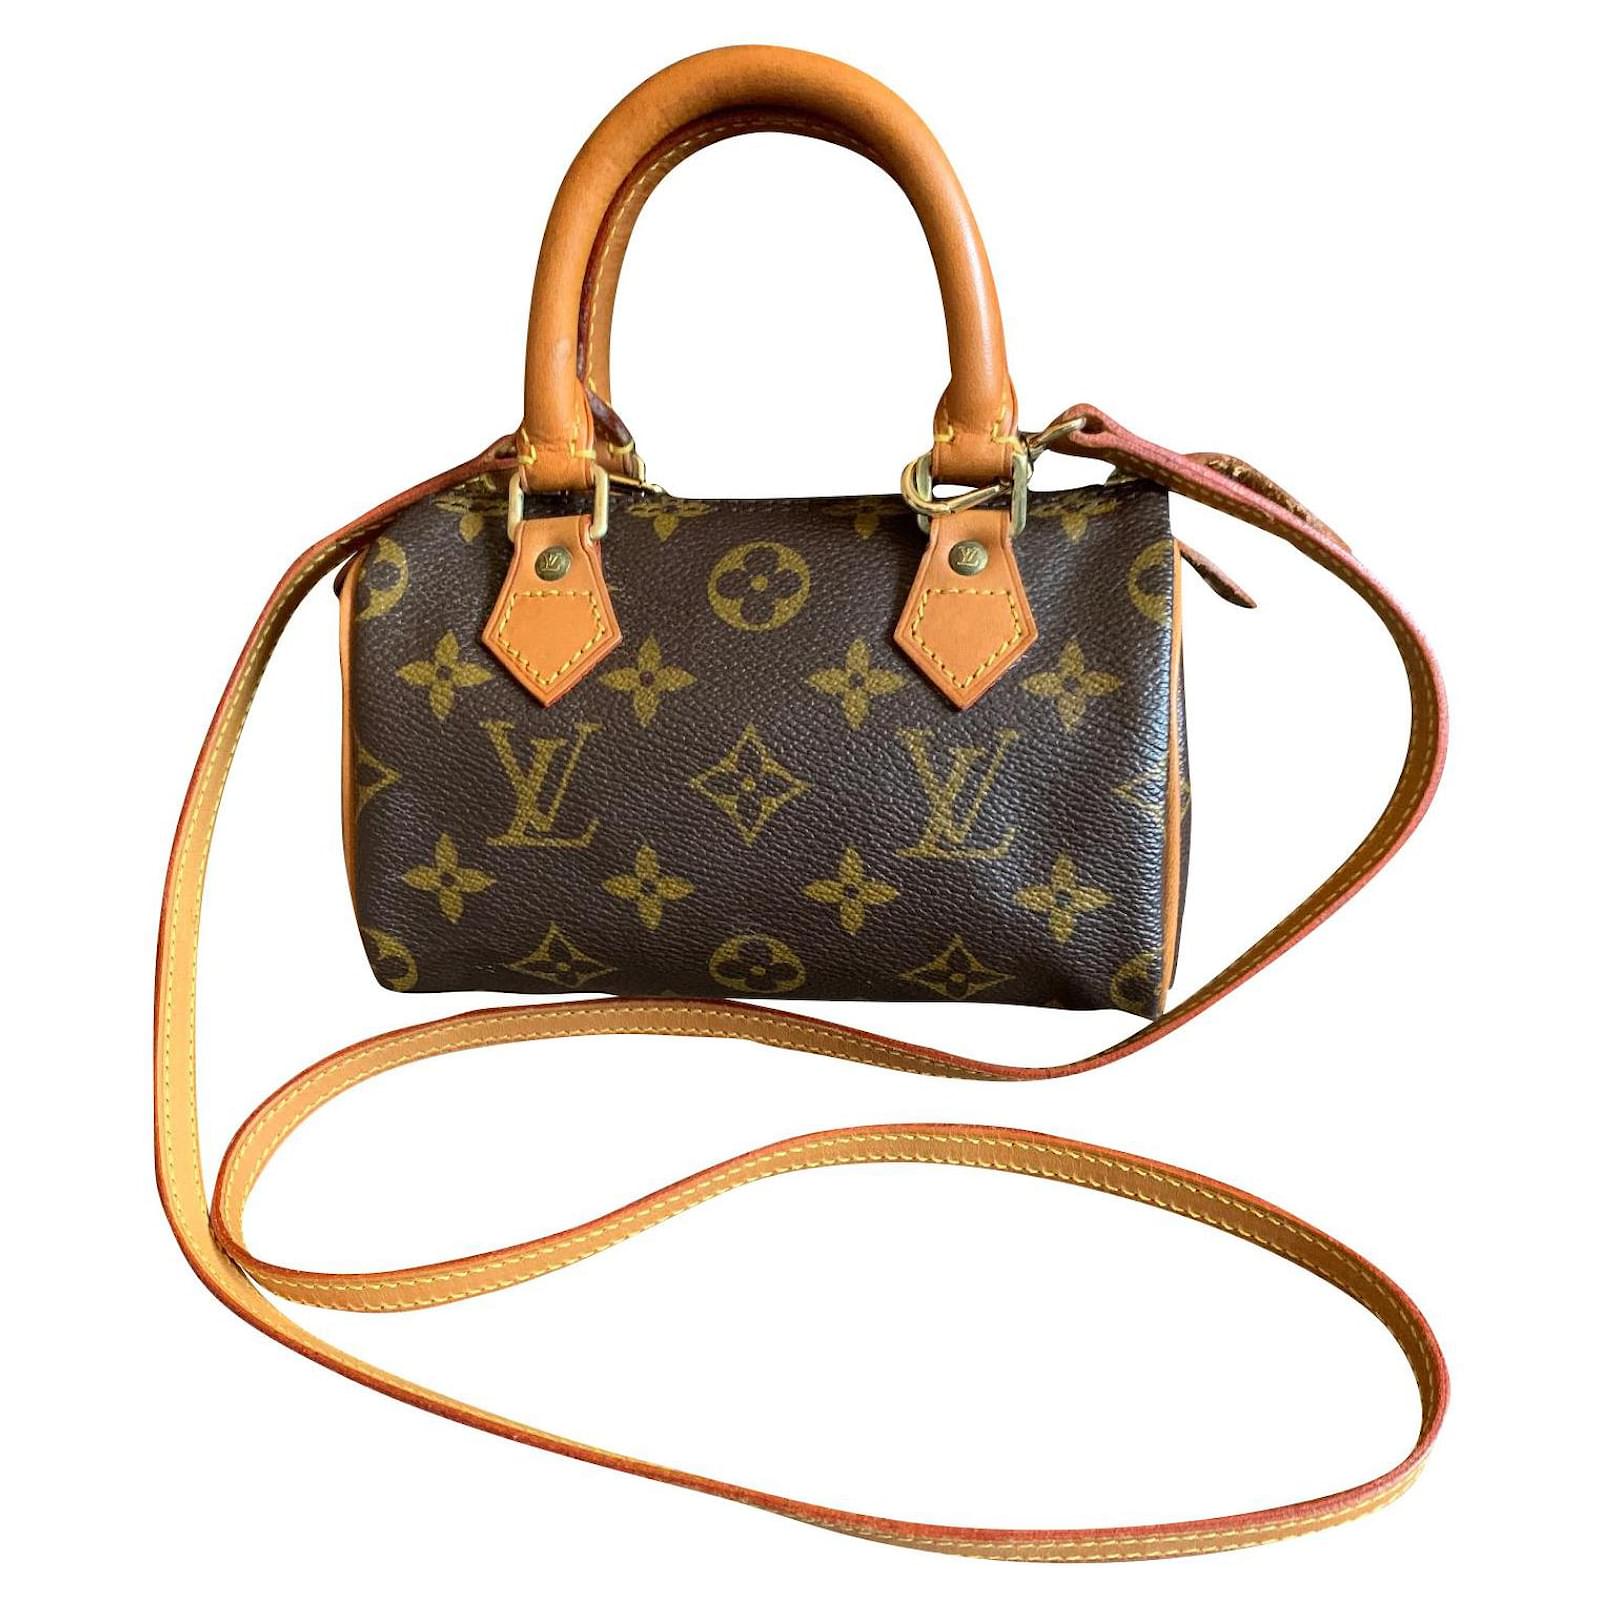 Vintage Louis Vuitton Nano Speedy Monogram Bag with LV Strap